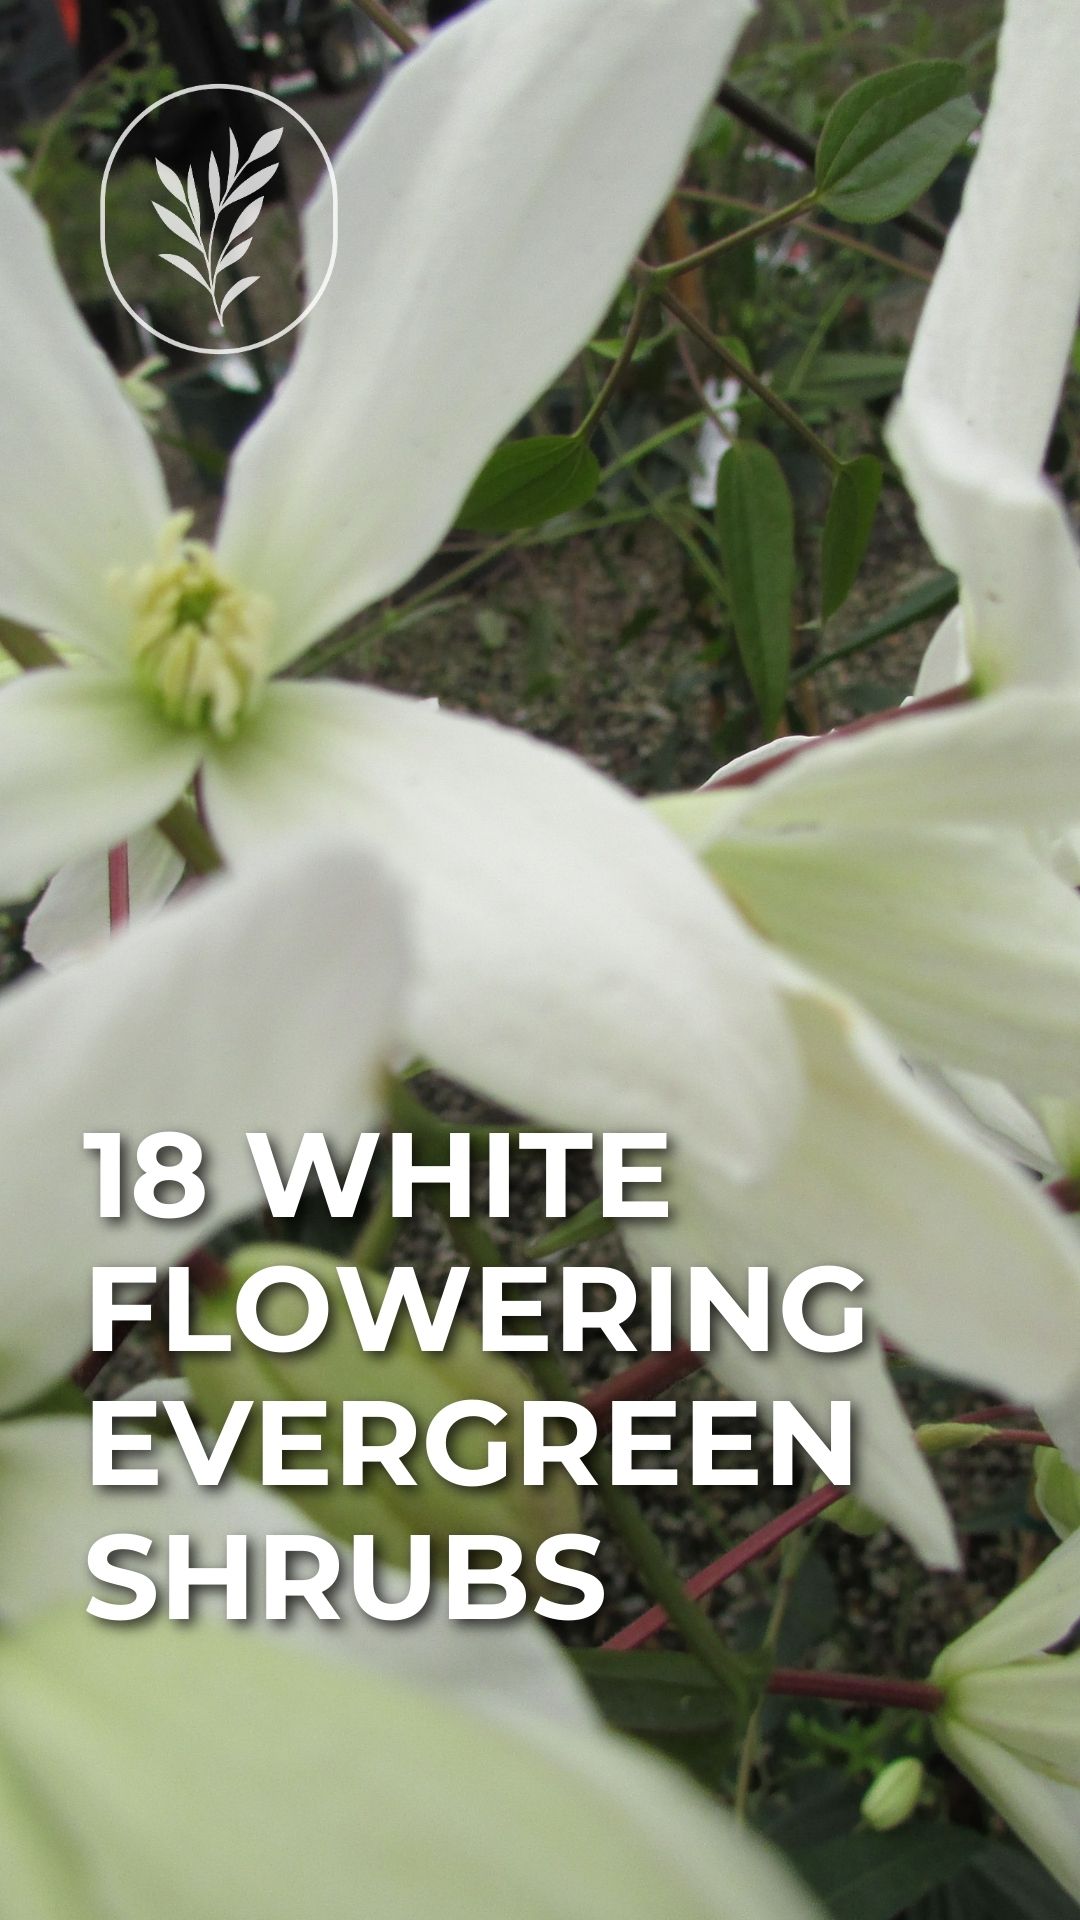 18 white flowering evergreen shrubs - story via @home4theharvest